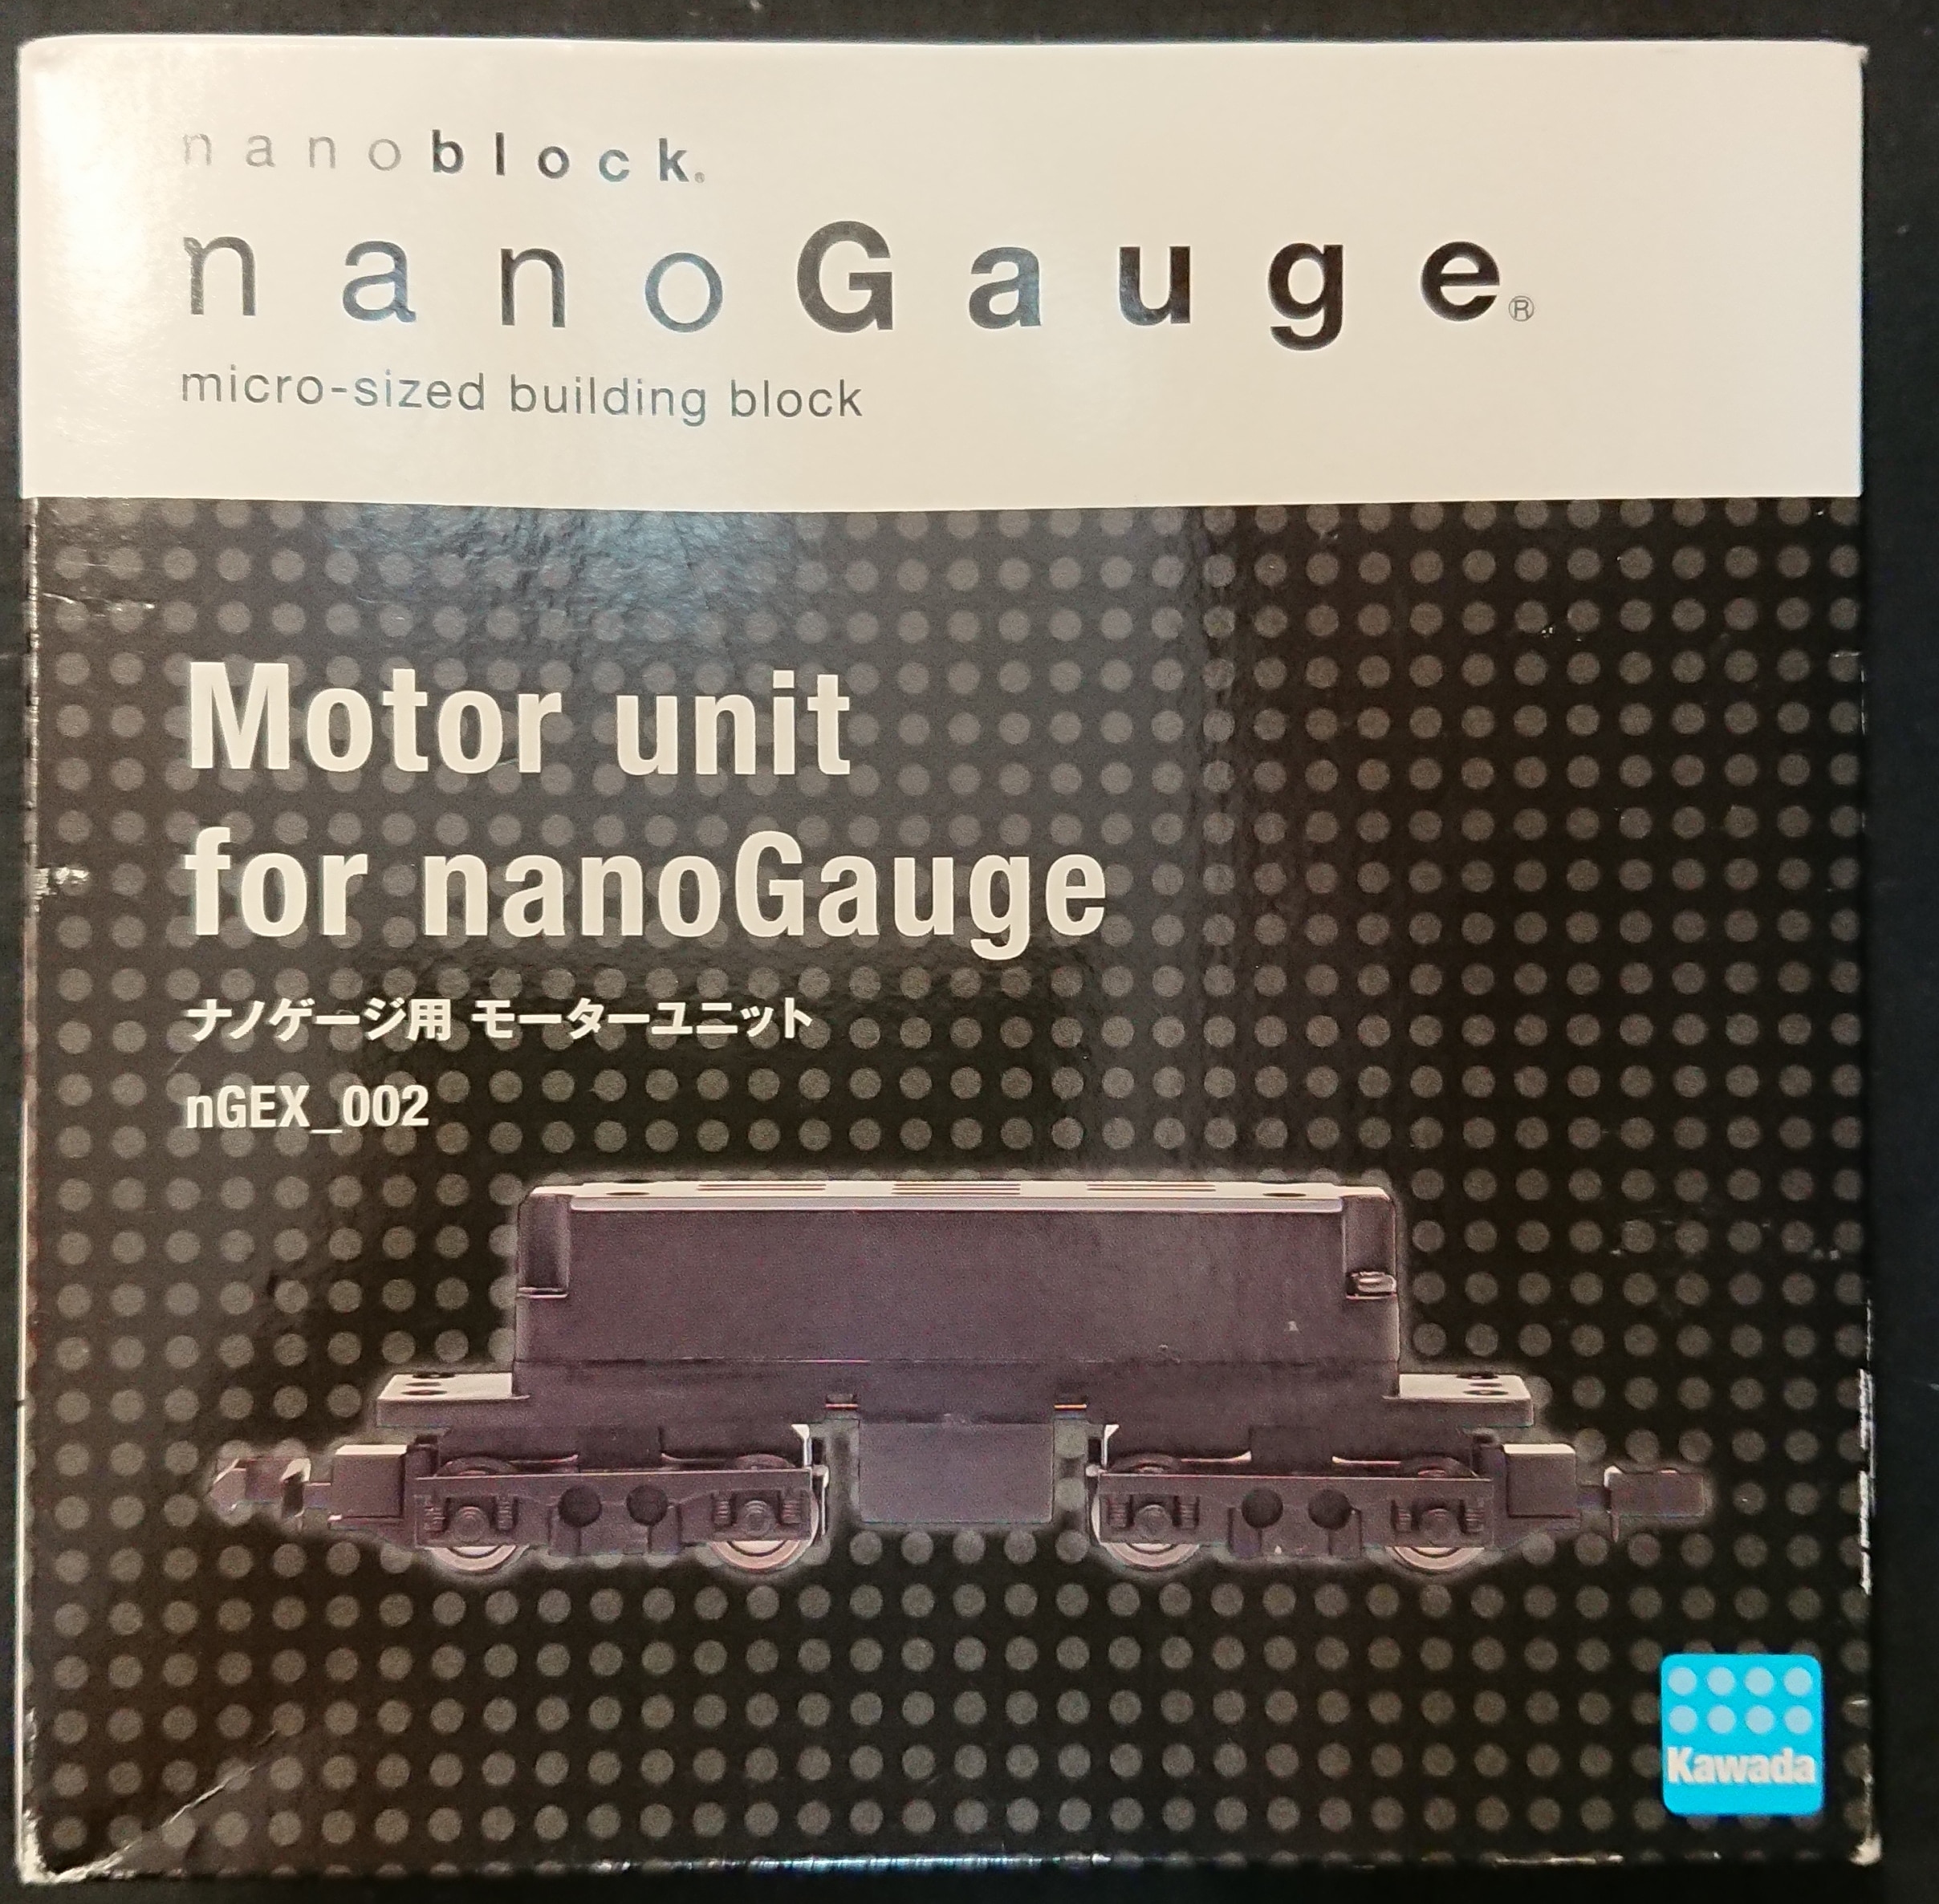 河田 ナノゲージ ナノブロック モーターユニット ナノゲージ用 Moter Unit For Nano Gauge まんだらけ Mandarake